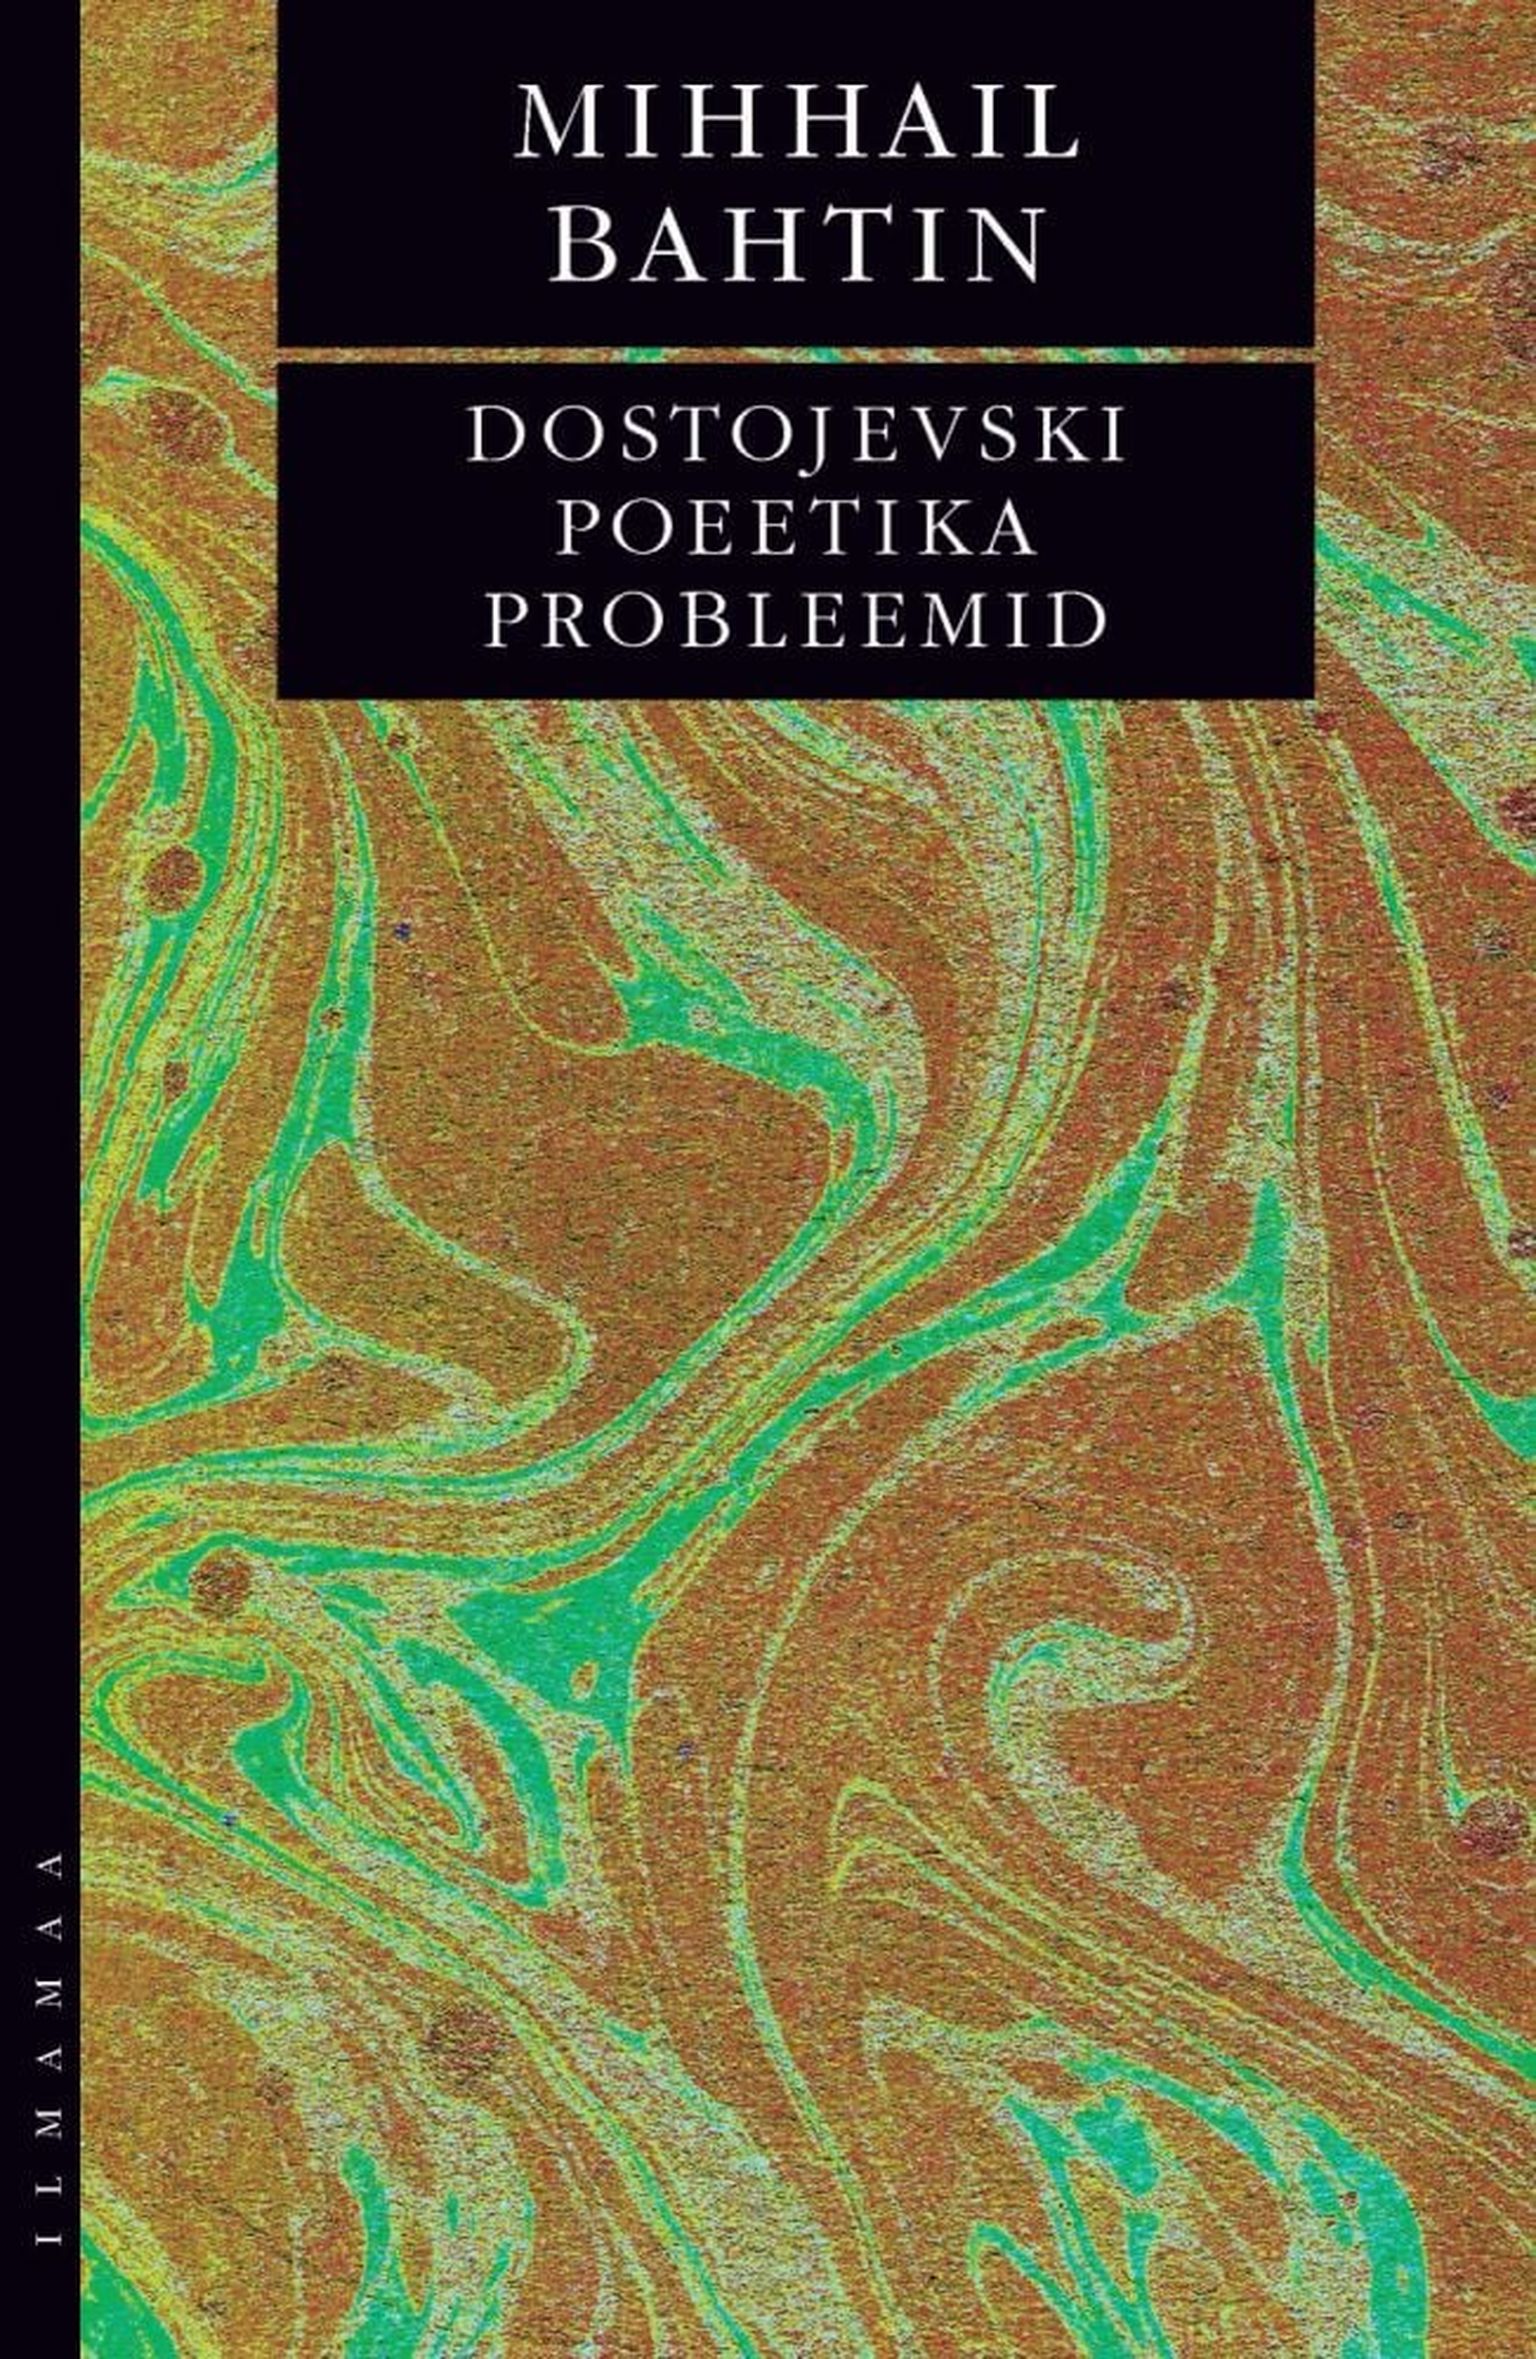 Mihhail Bahtin, «Dostojevski poeetika probleemid».